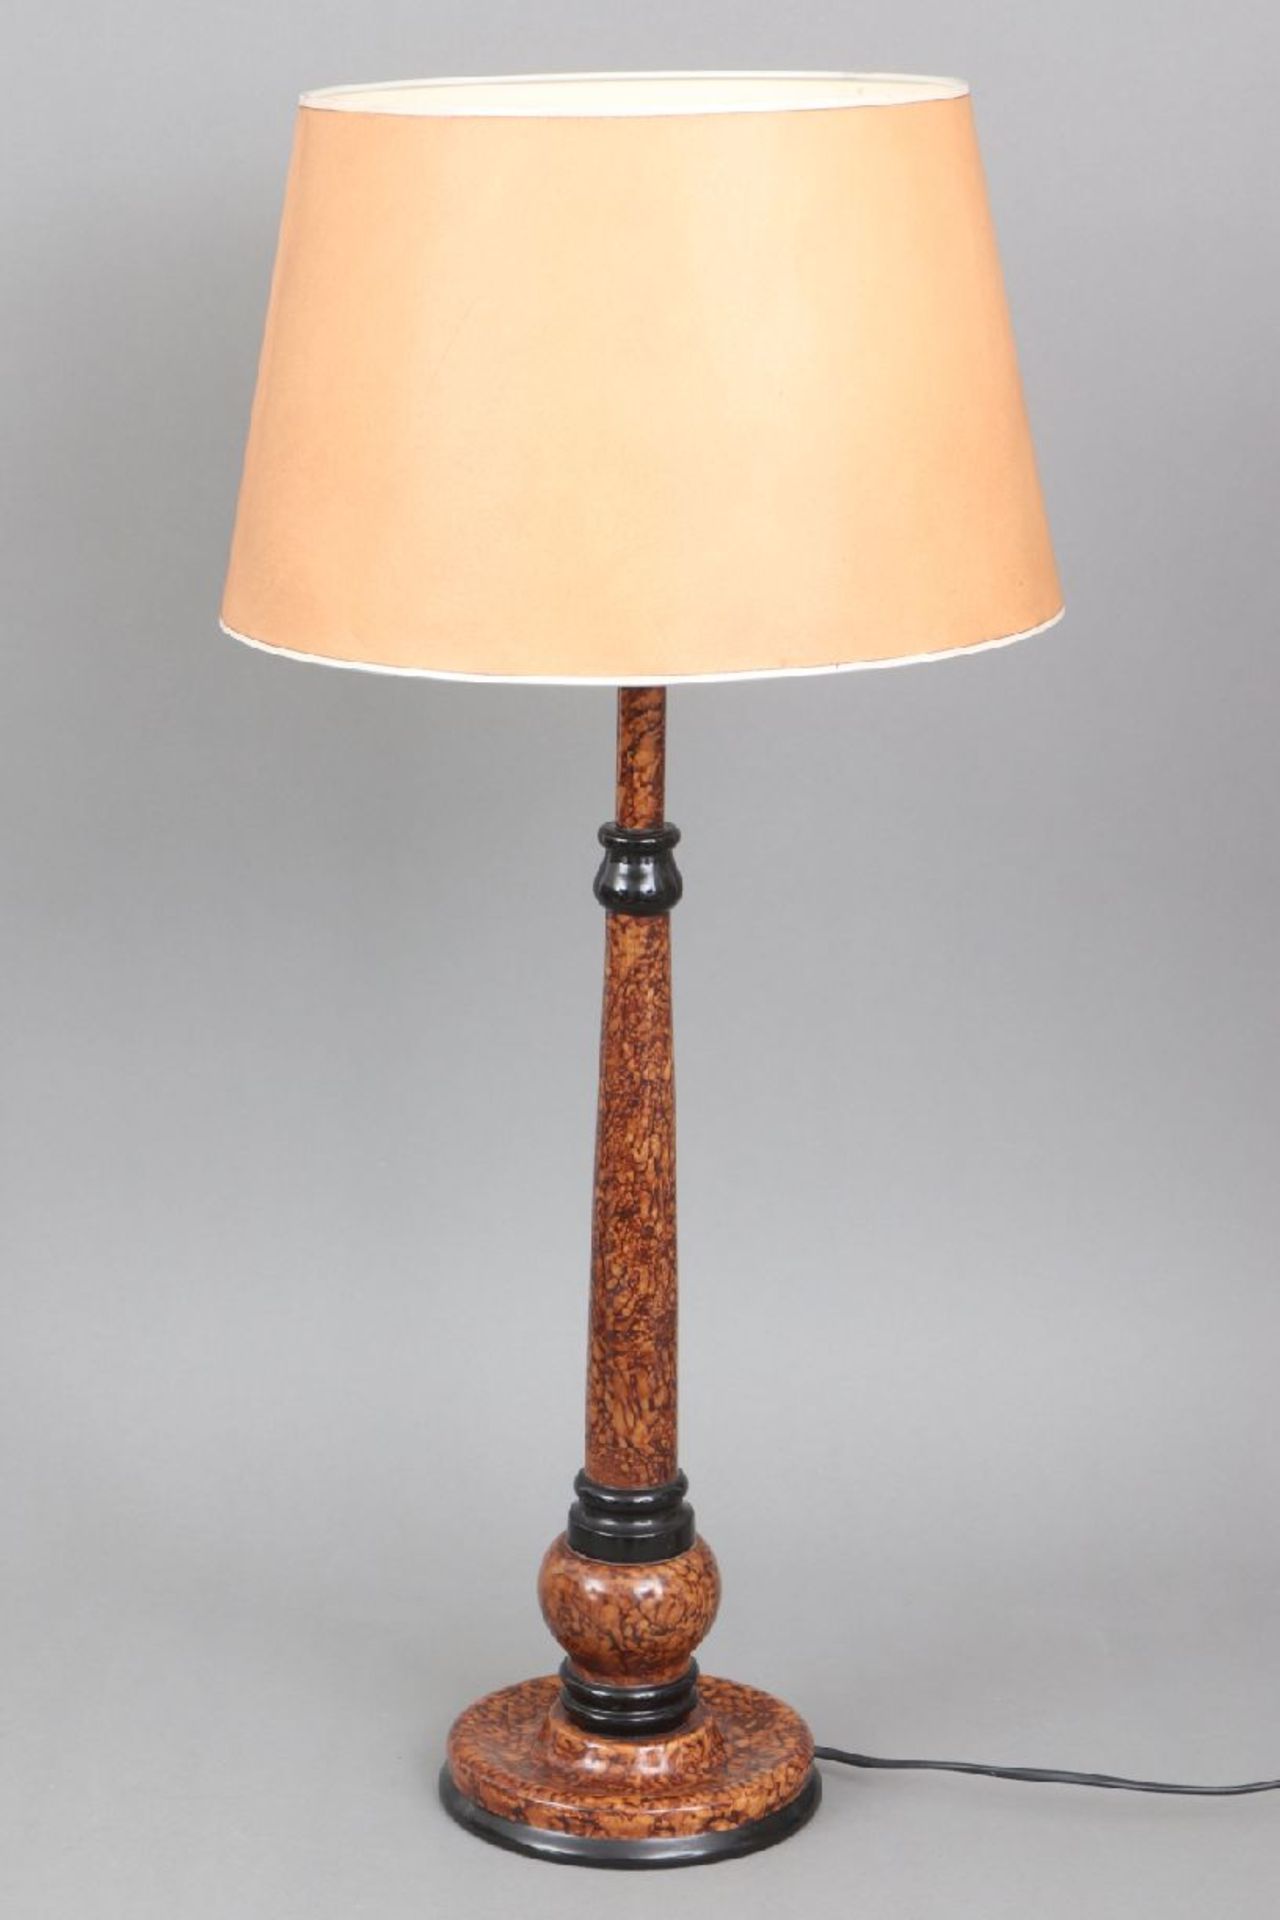 Tischlampe mit Säulenfuß in Ahornholz-Optik1 elektrische Brennstelle, beiger Pappschirm, H ca. 72cm,